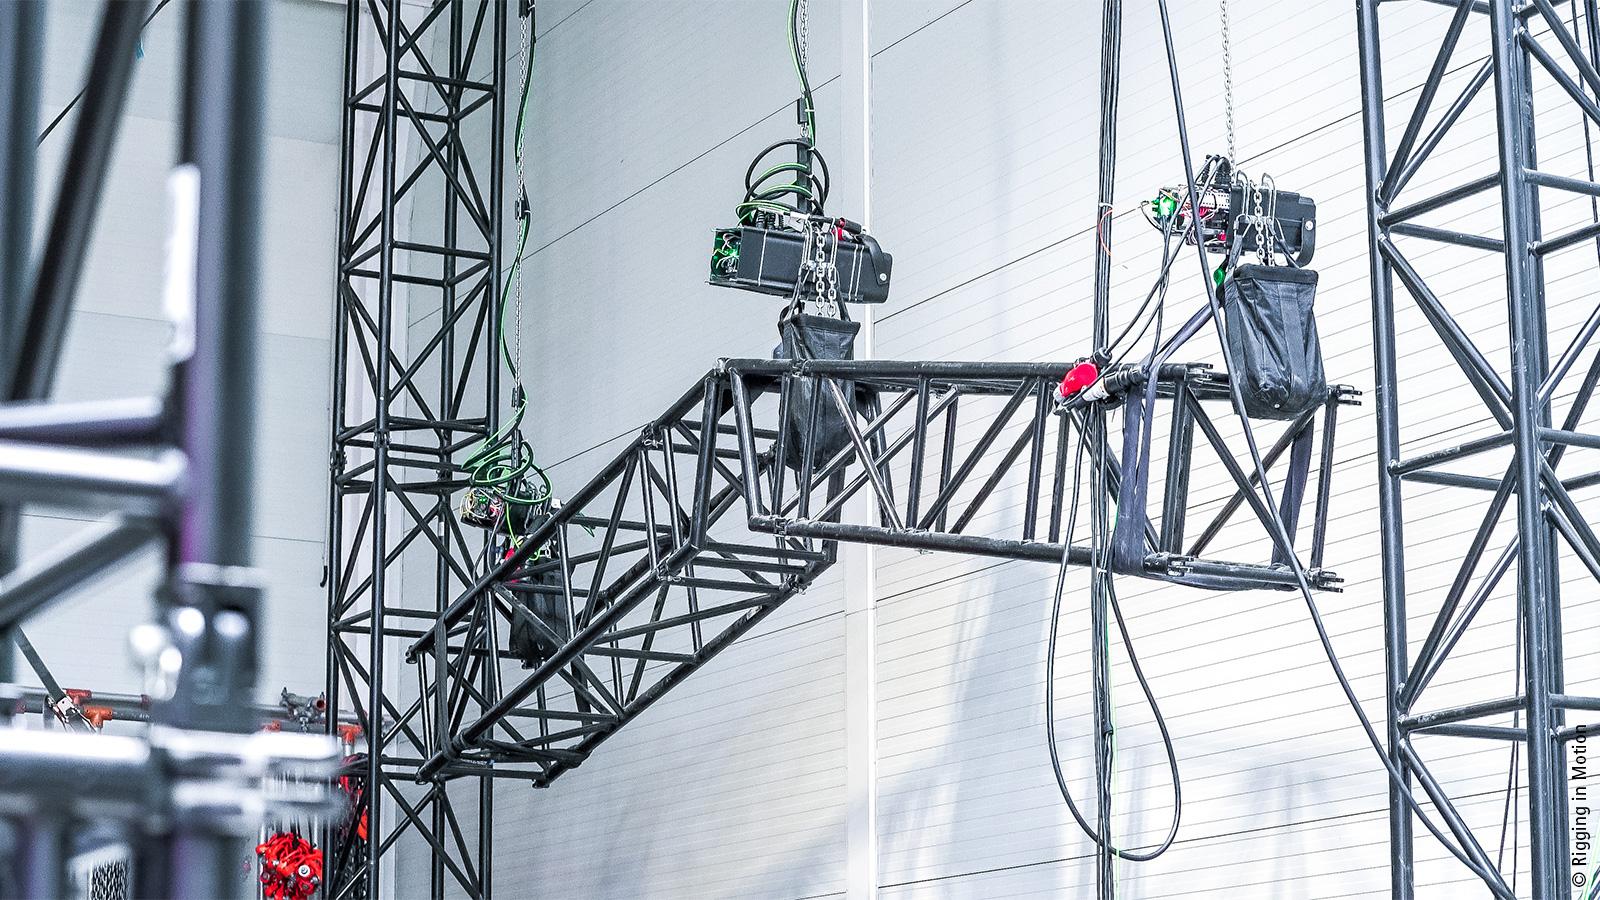 Rigging in Motion Ltd., im ungarischen Dunakeszi, ist auf die Automatisierung von Bühnentechnik spezialisiert. Die Traversen und Plattformen des Unternehmens kommen weltweit in Filmproduktionen und Veranstaltungsstunts zum Einsatz – automatisiert mit PC-based Control von Beckhoff. 